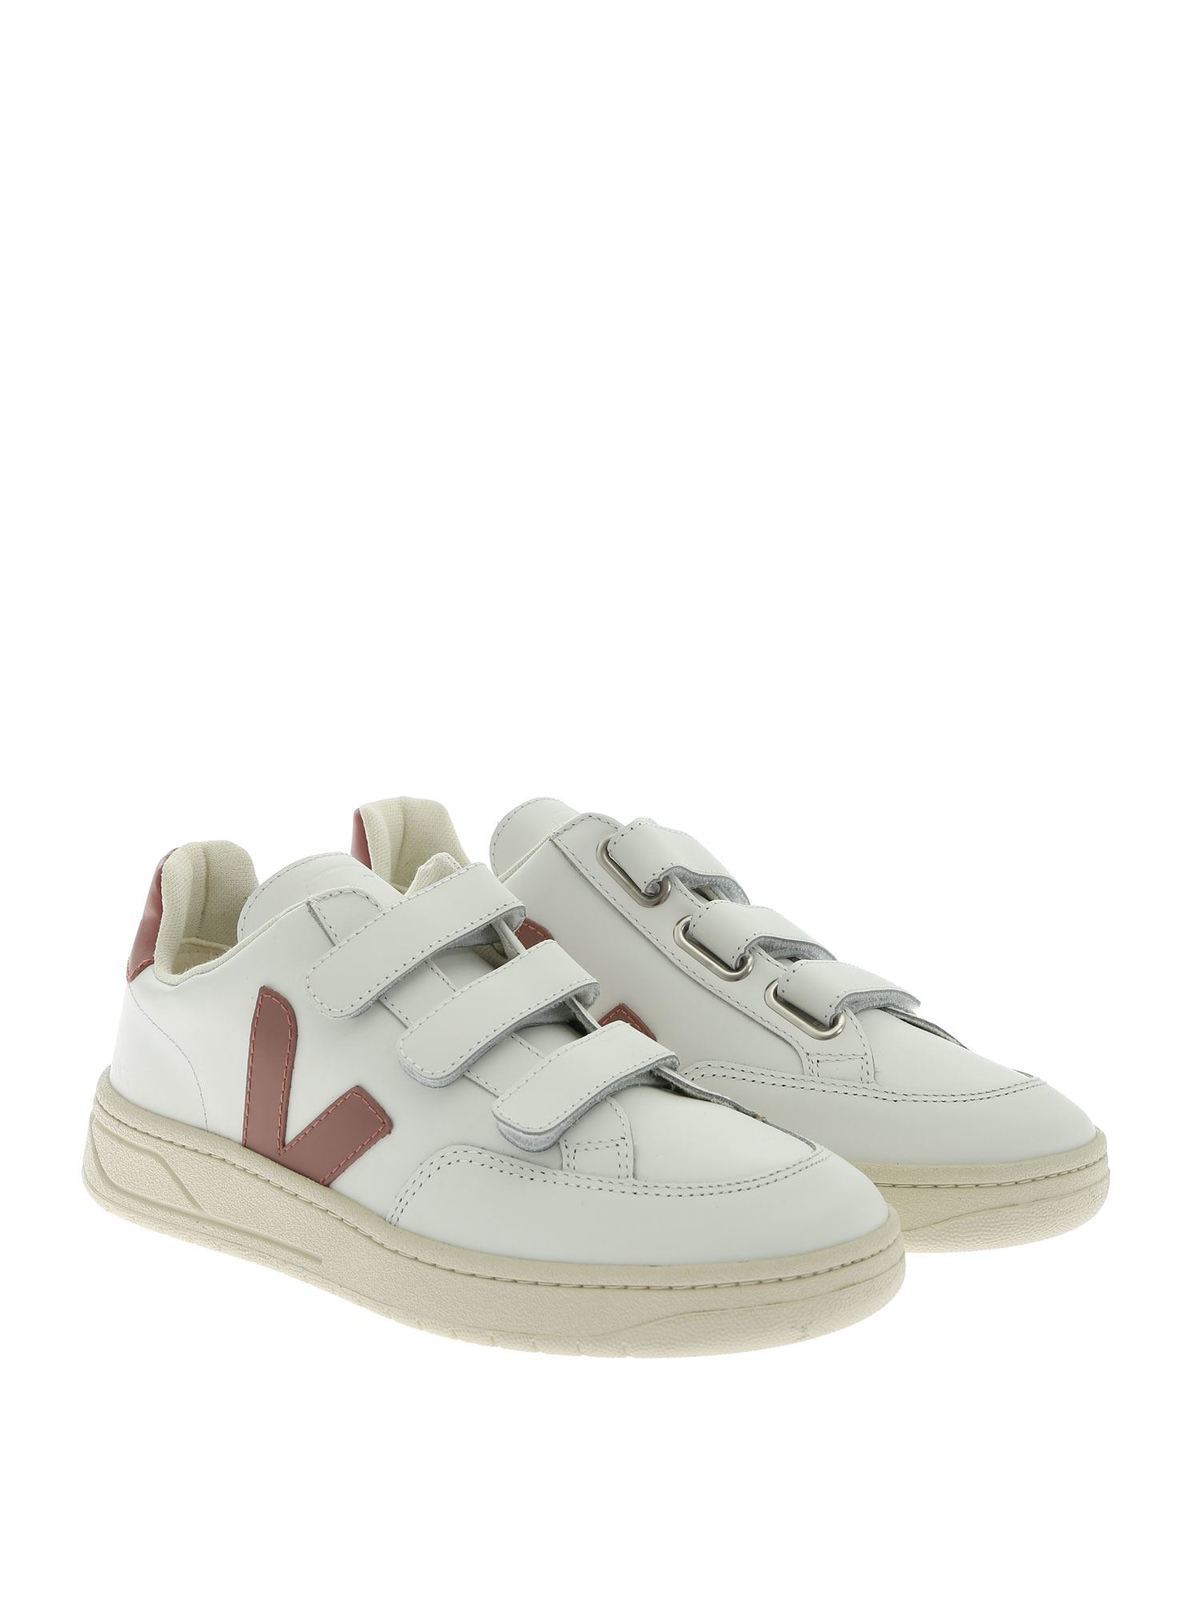 Veja - V-Lock sneakers in white with 